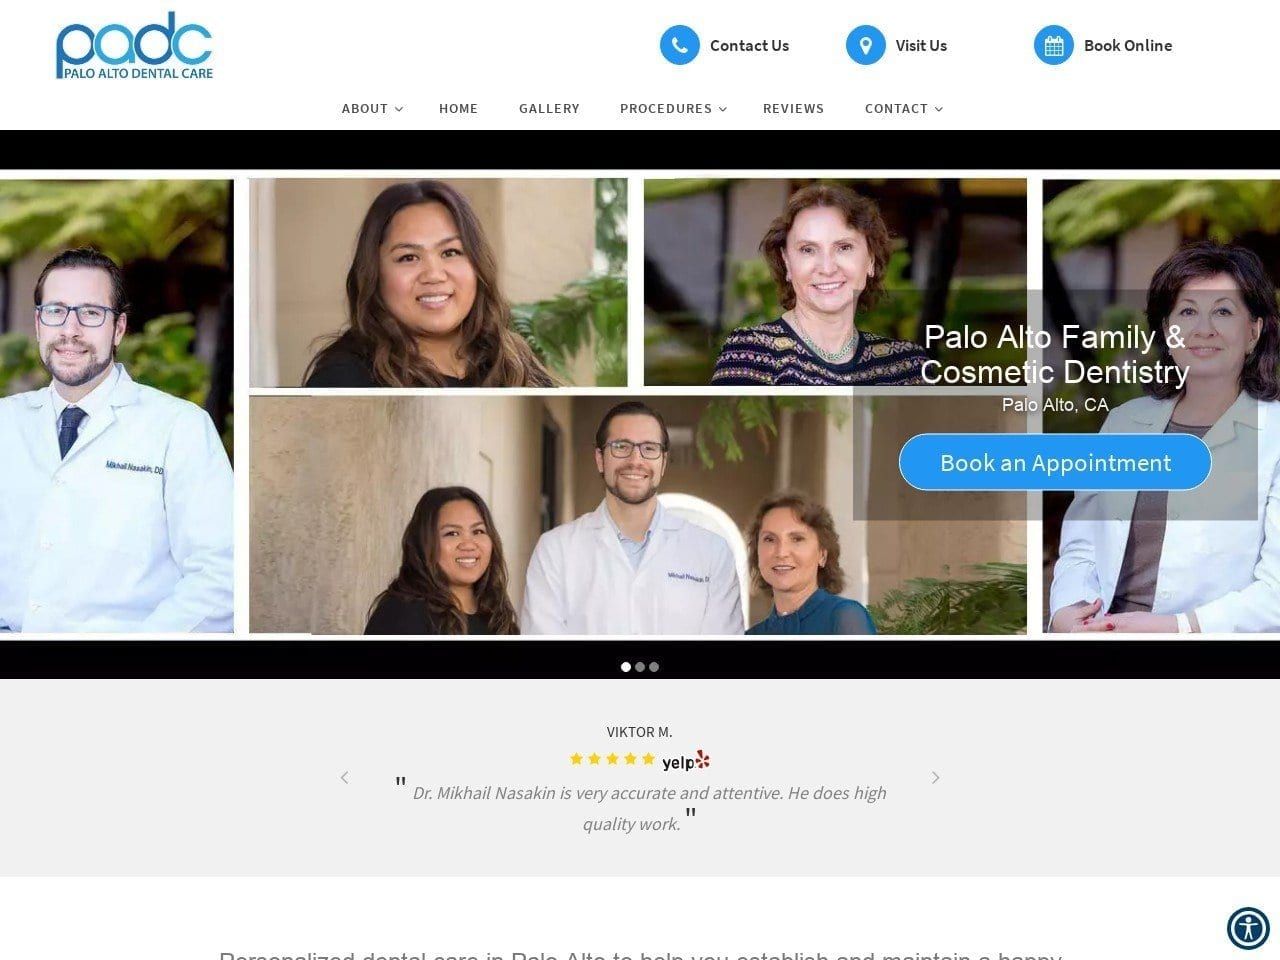 Palo Alto Dental Care Website Screenshot from paloaltodental.com